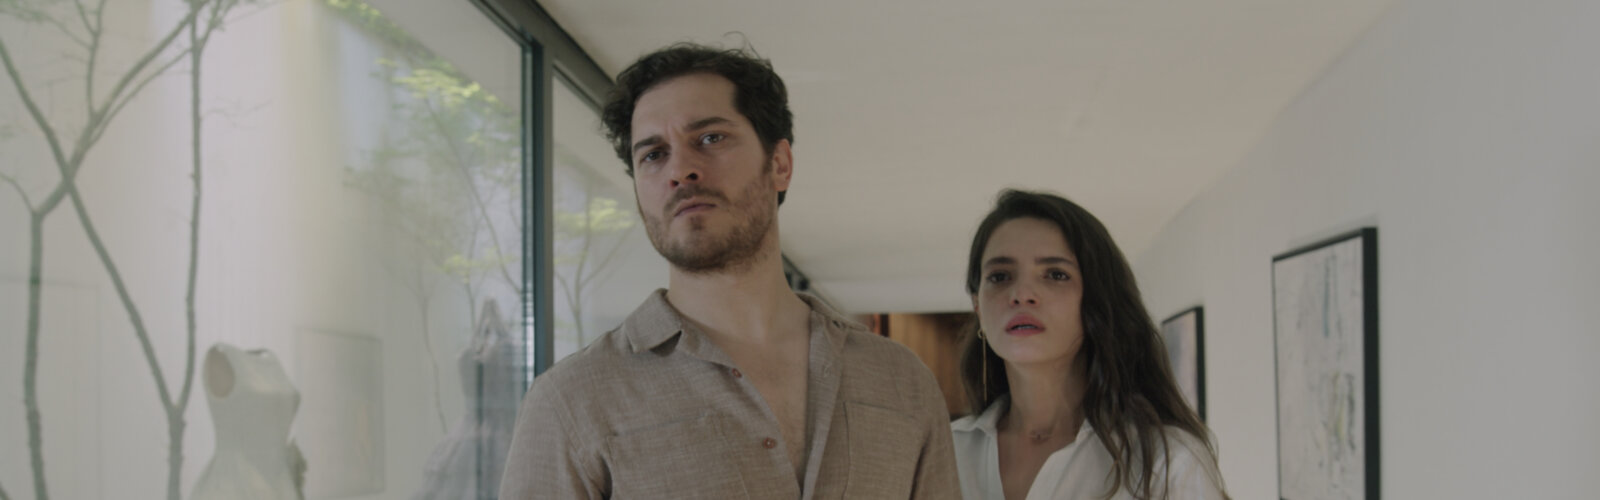 Eine Szene aus der zweiten Staffel der Netflix-Serie Der Schneider: Der Schneider Peyami (Çagatay Ulusoy) und seine Esvet (Sifanur Gül).